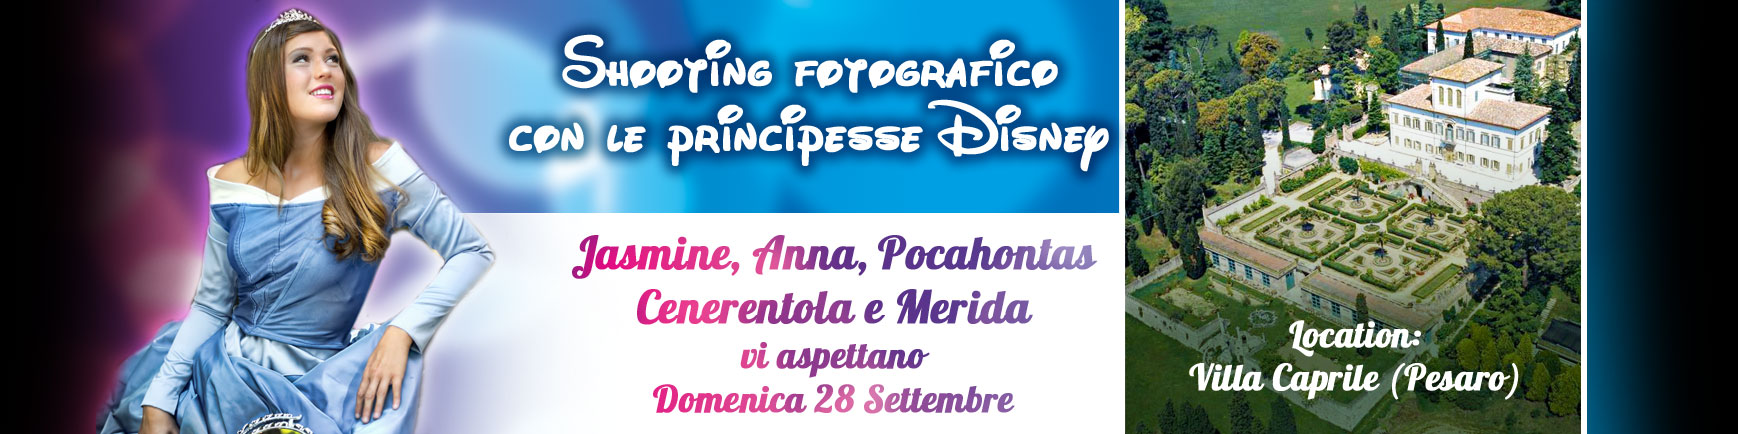 2° Shooting Fotografico con le Principesse Disney 28 Settembre